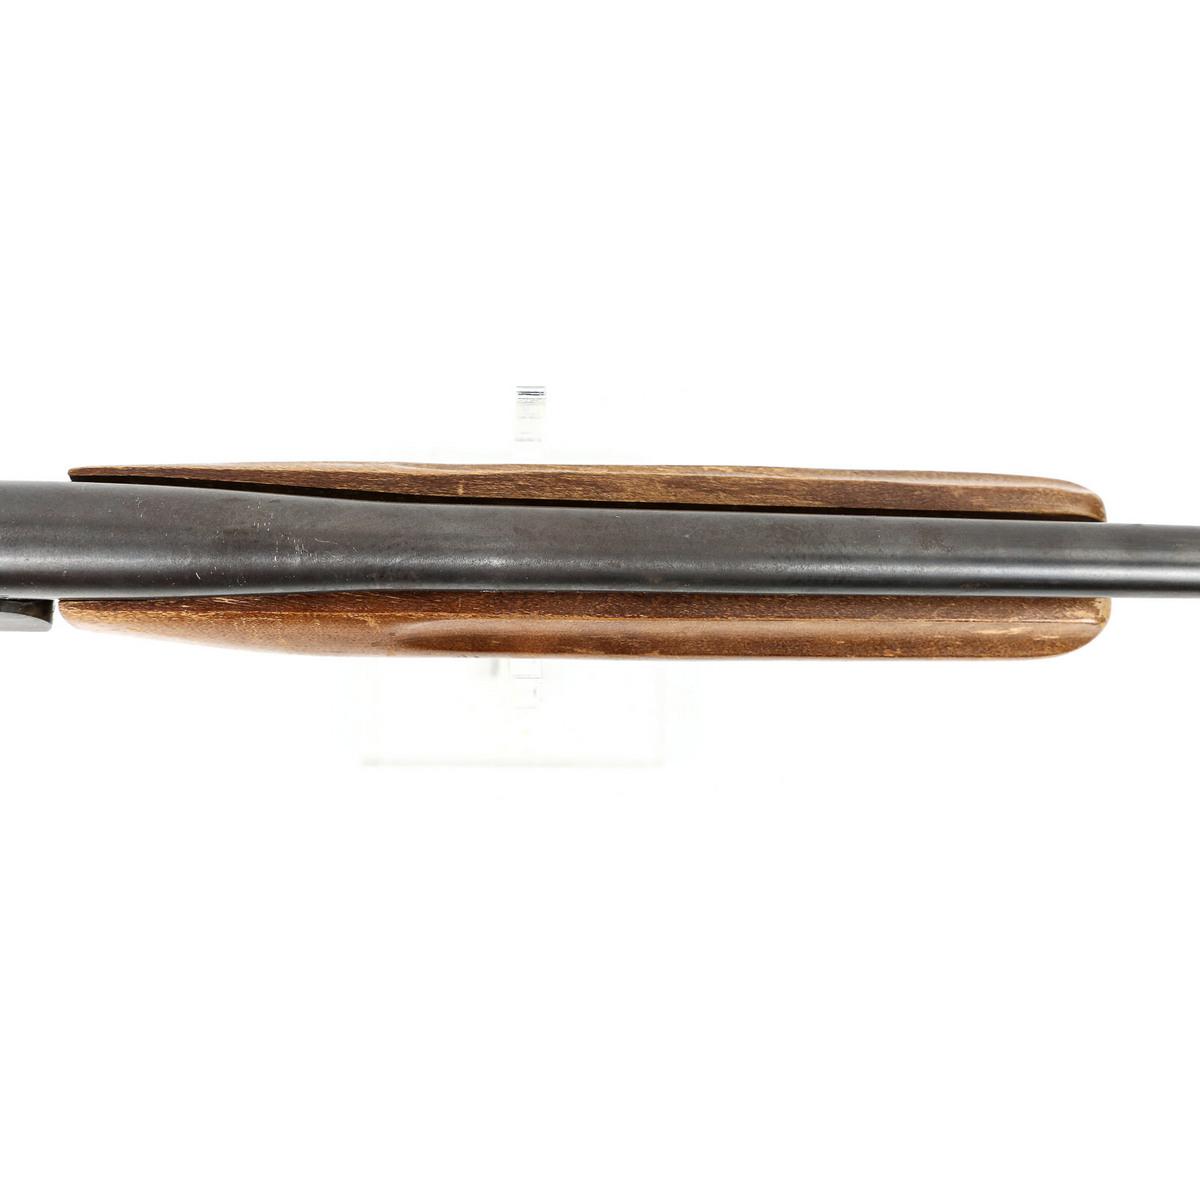 Winchester Model 37A 410 Gauge Shotgun